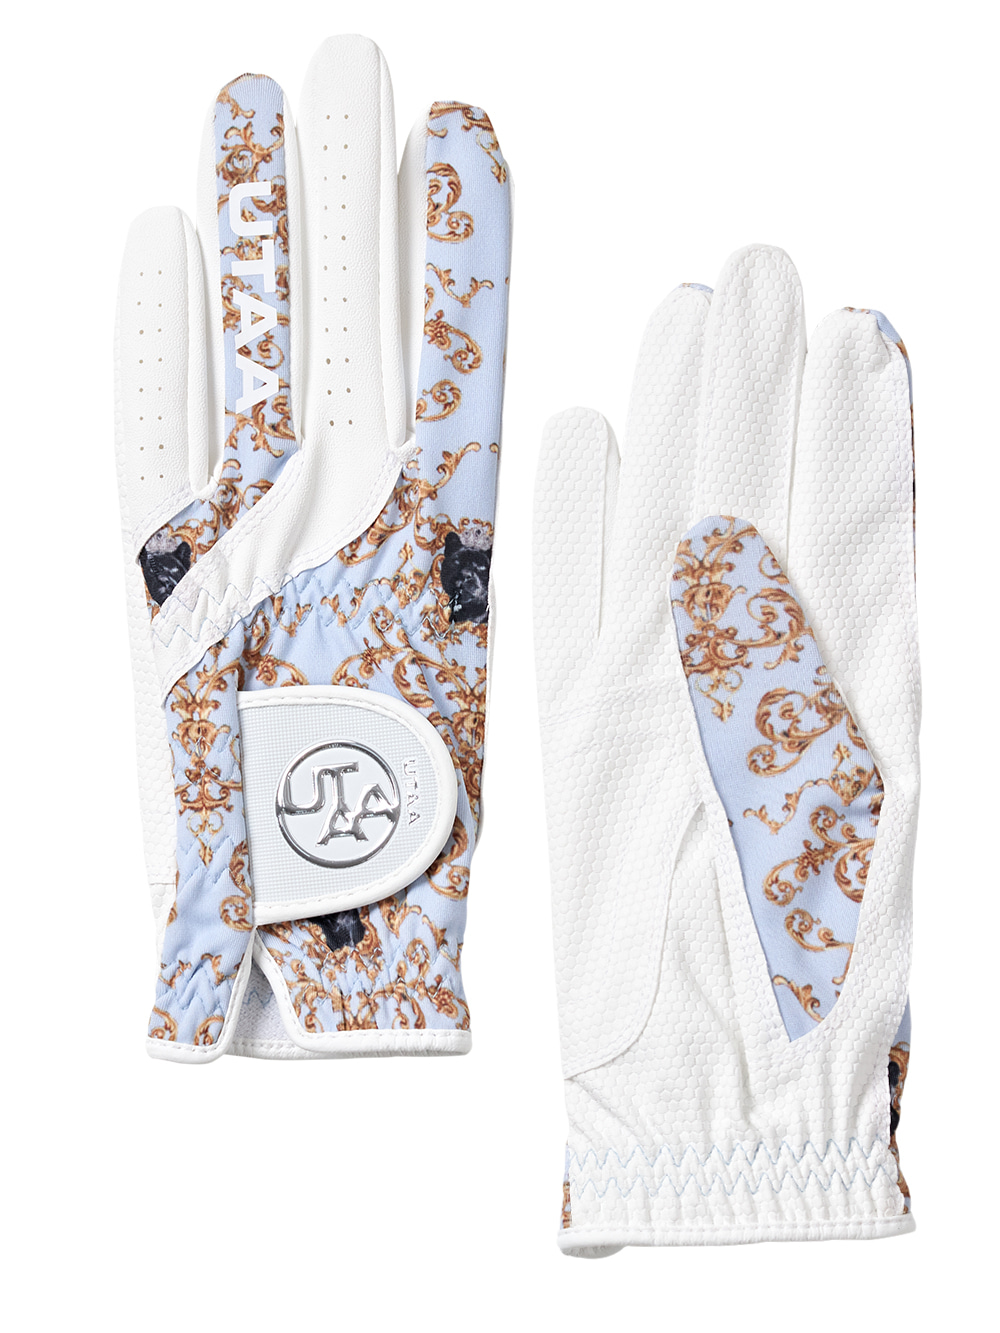 UTAA Baroque Golf Gloves : Women&#039;s (UB0GVF101SB)